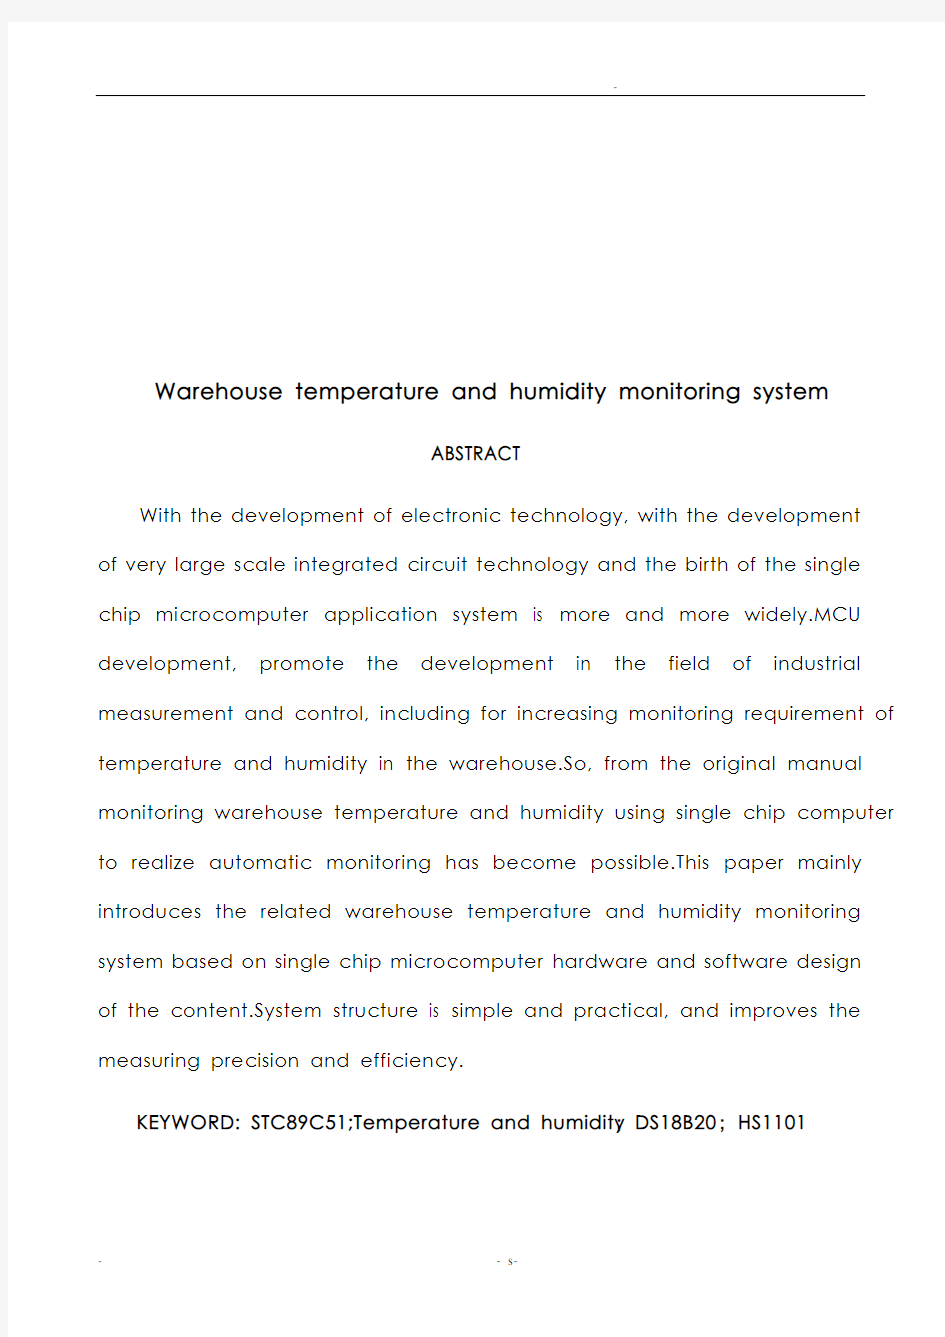 仓库温湿度监测系统毕业设计